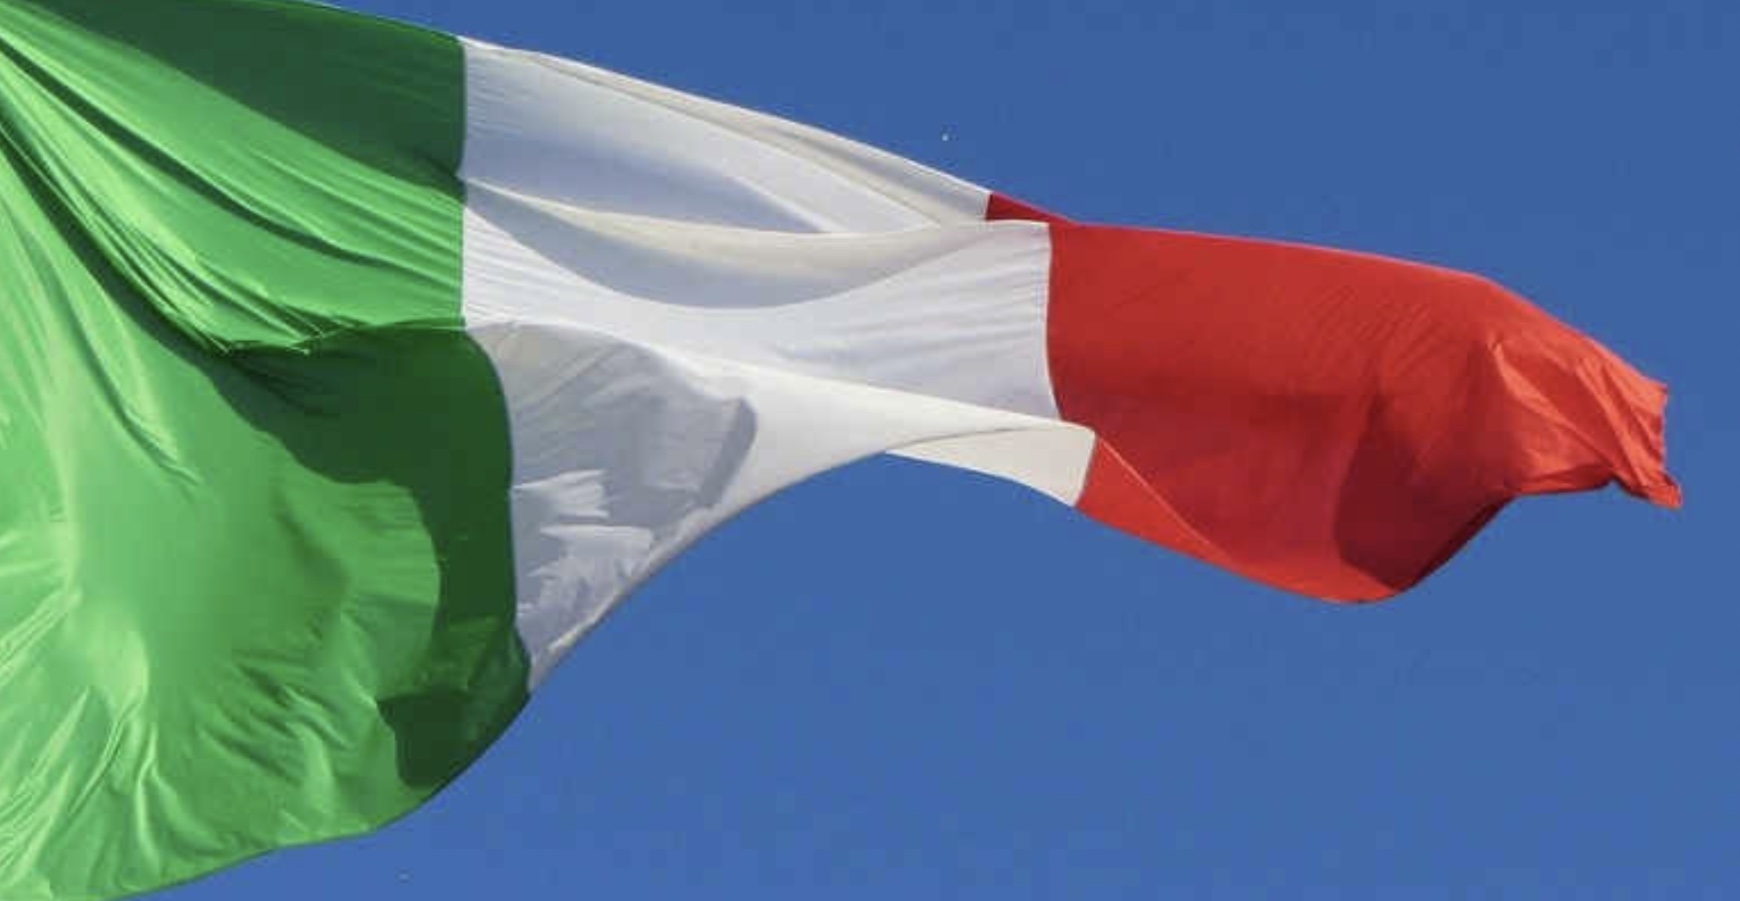 Ripartenza : “Se tutto funziona, i conti dell'Italia alla fine dovrebbero tornare”